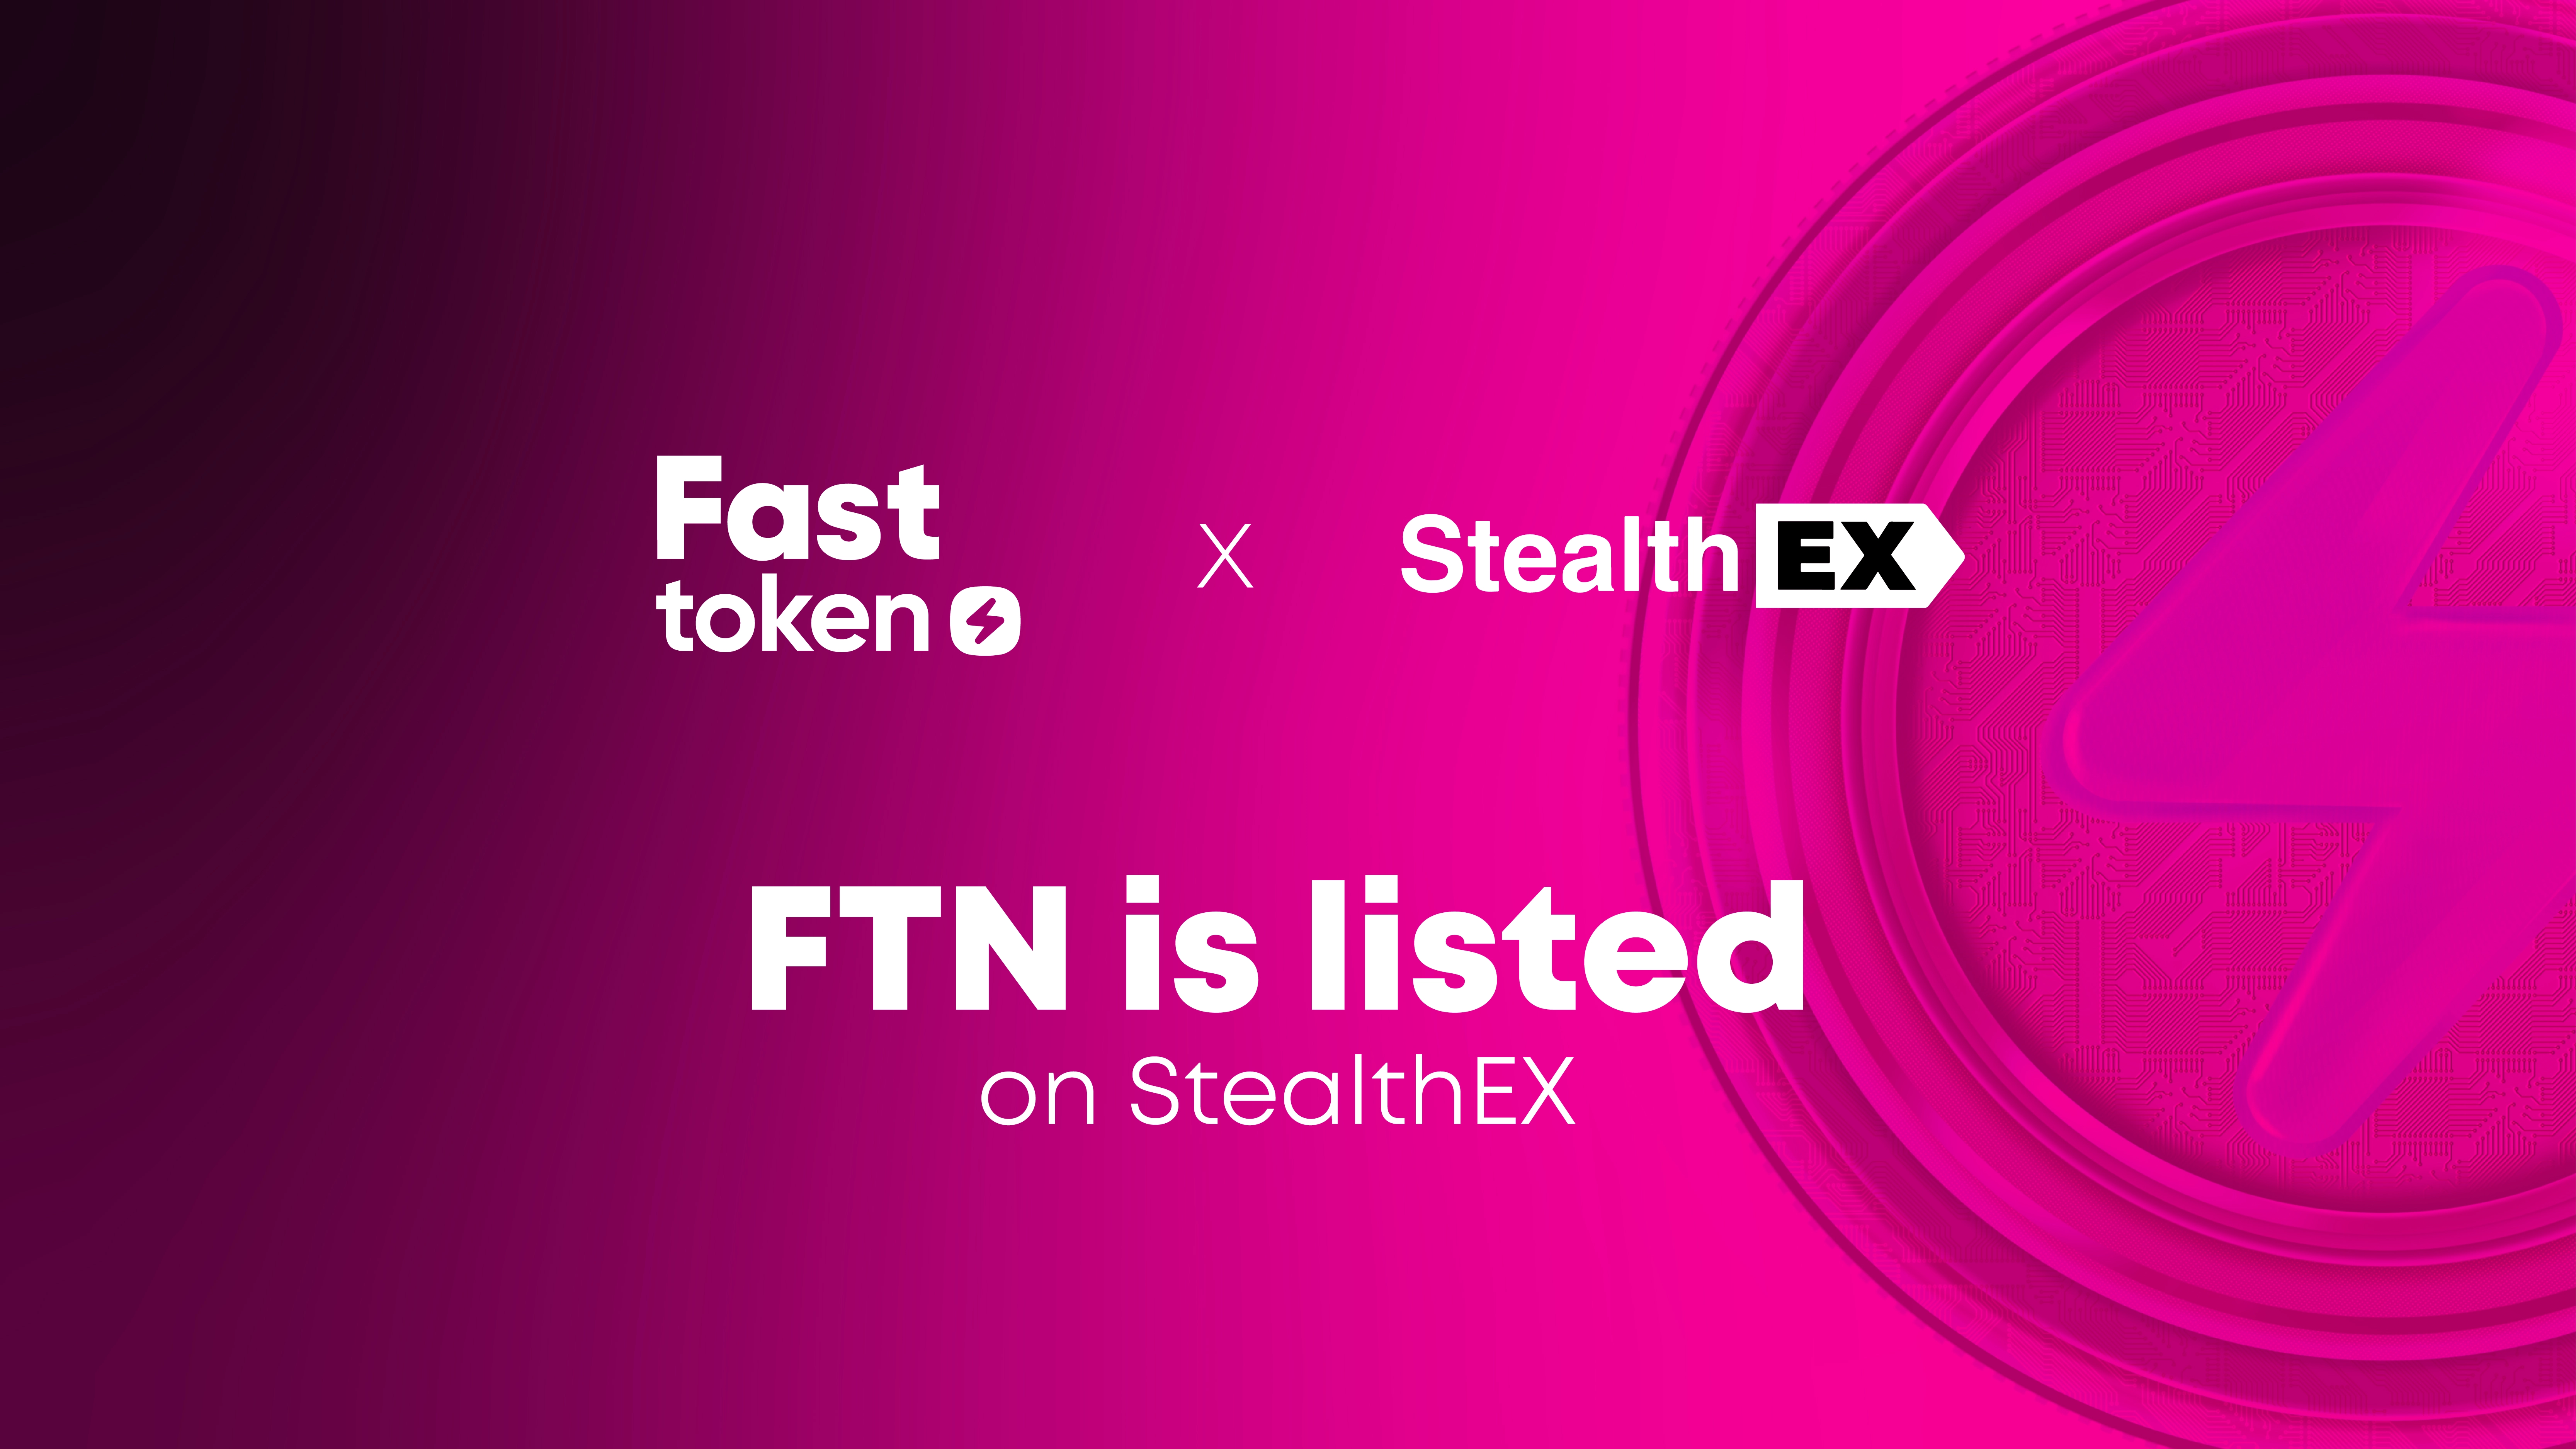 Fasttoken (FTN) agora listado na StealthEX